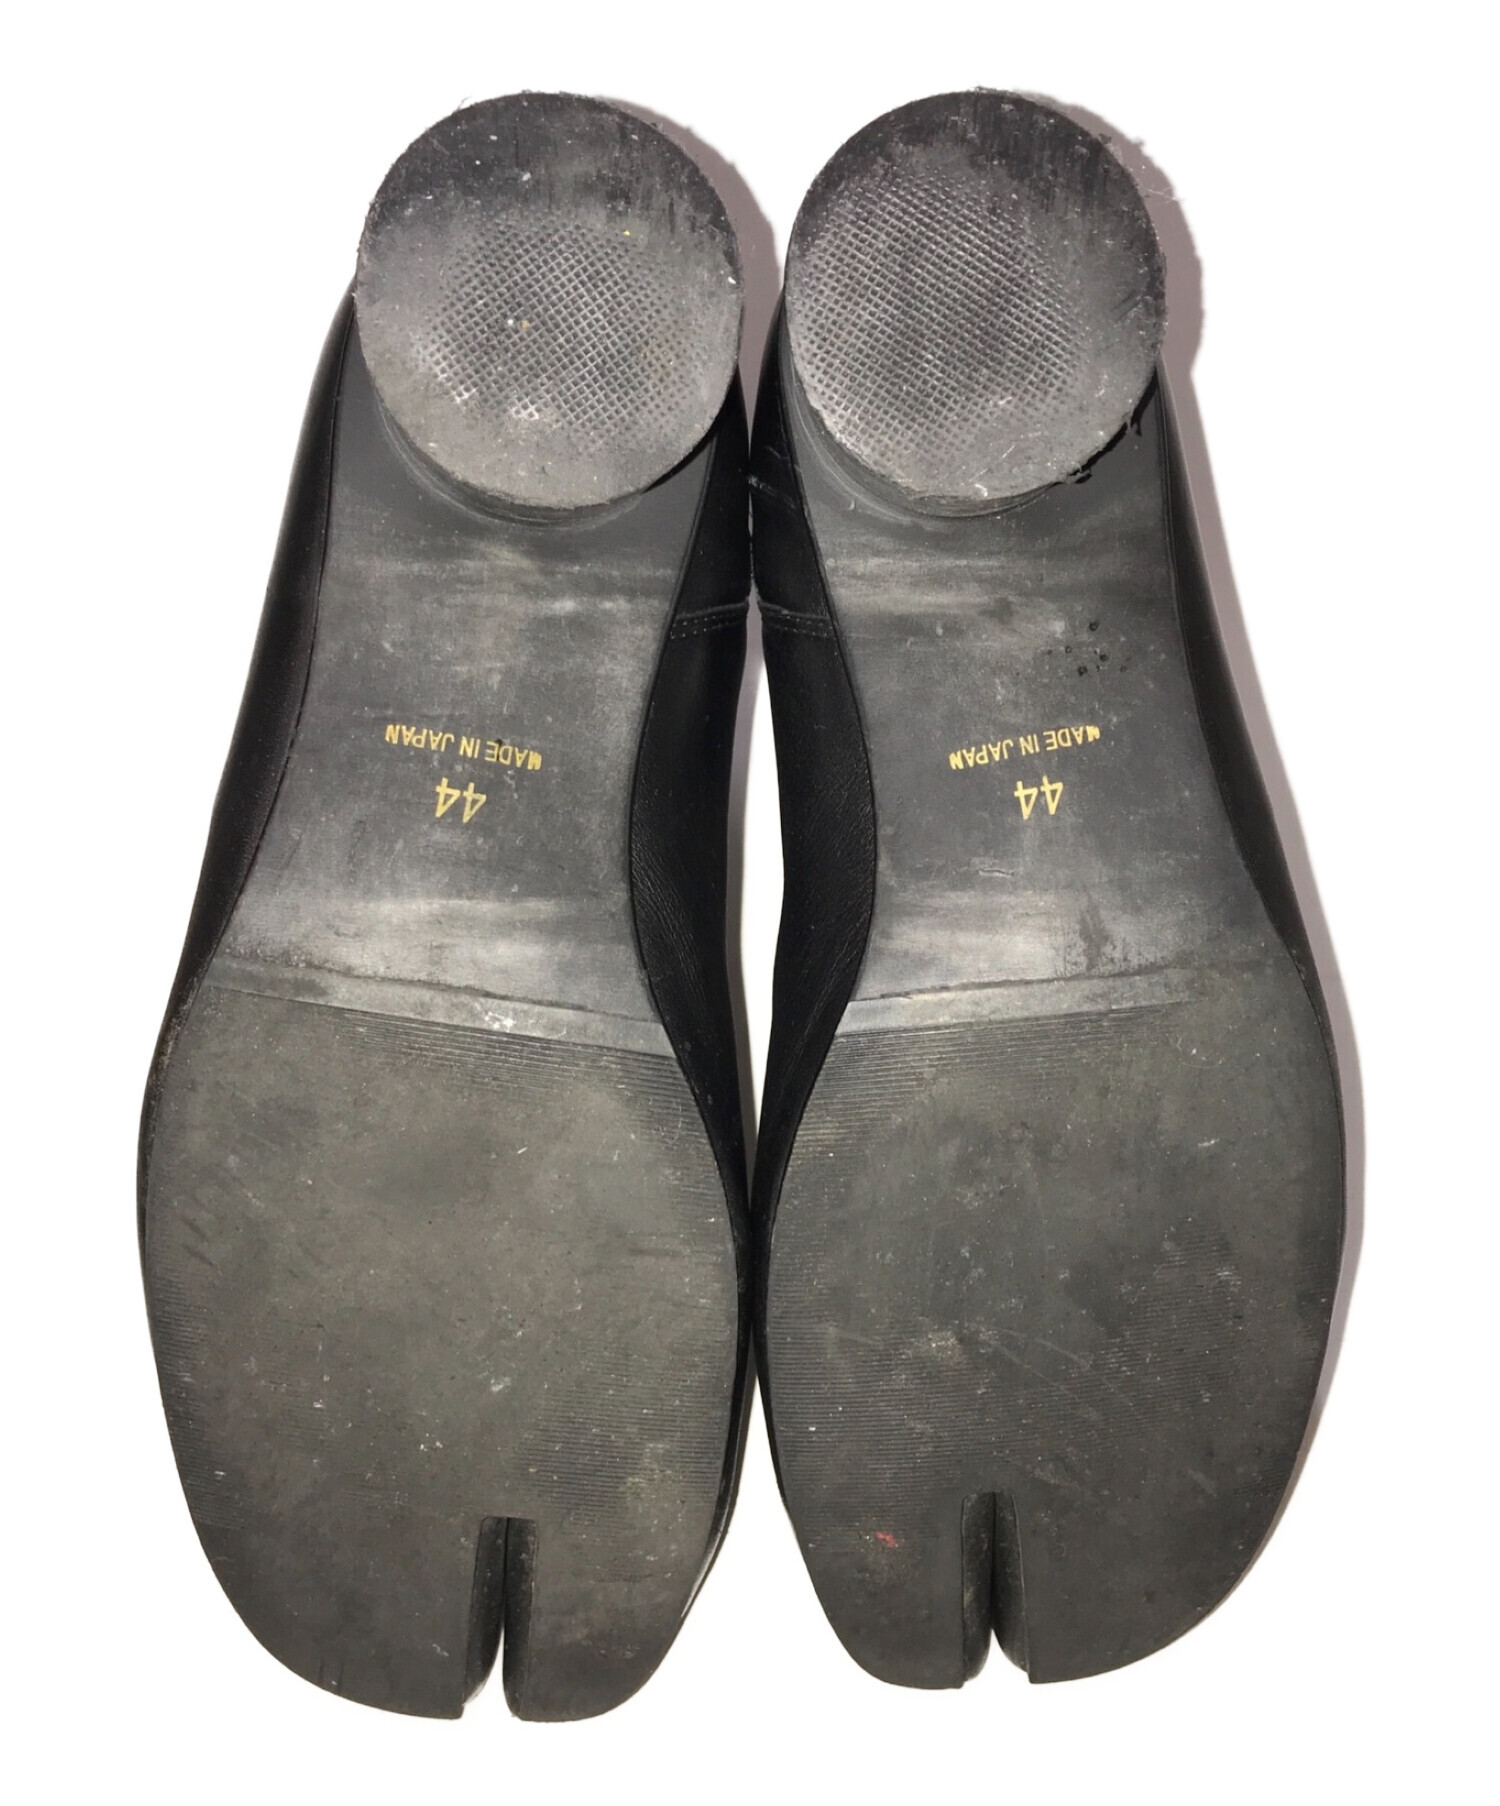 endevice (エンデヴァイス) 足袋ブーツ ブラック サイズ:44